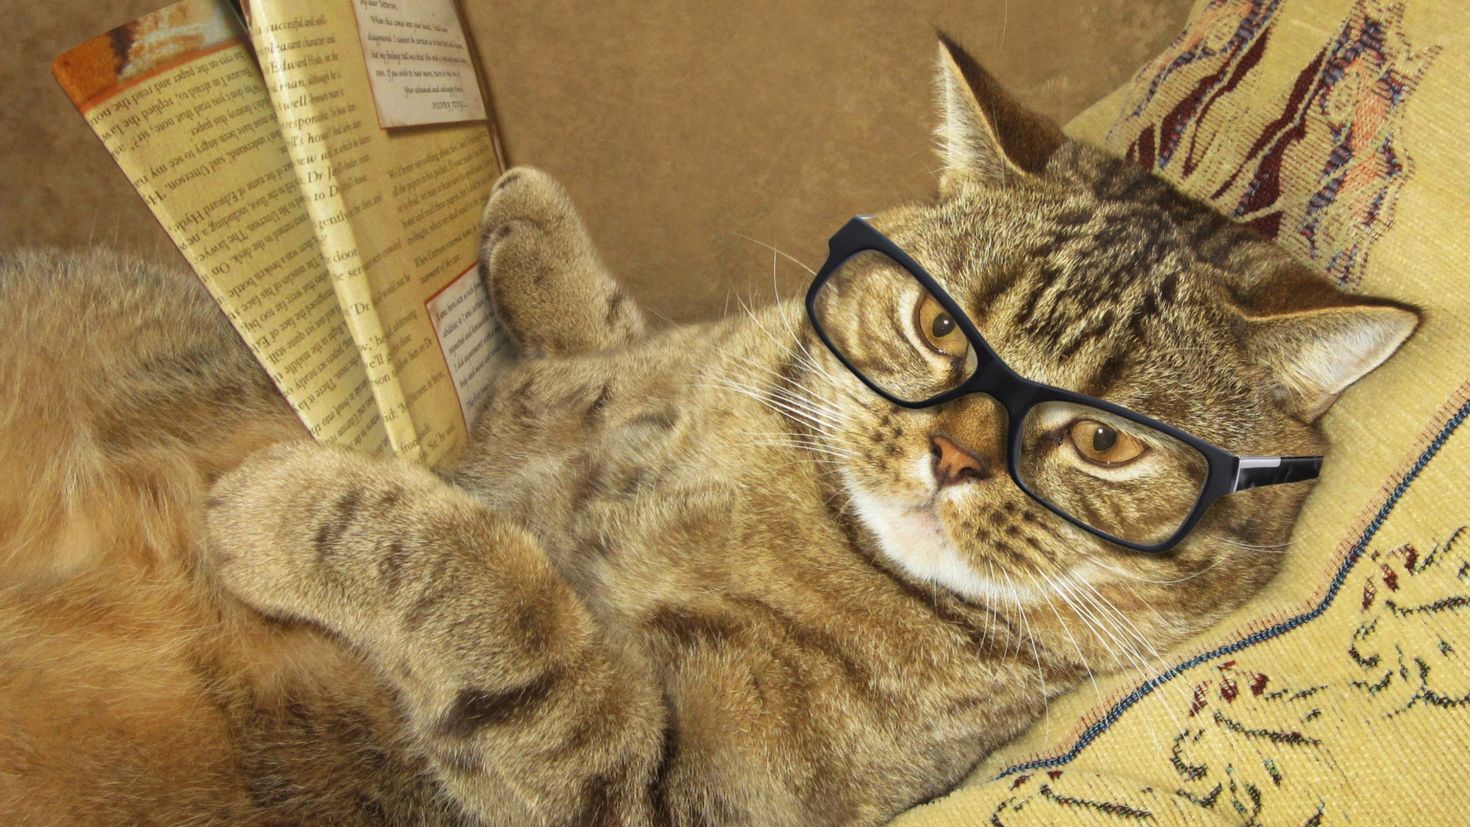 Кошка в очках картинки